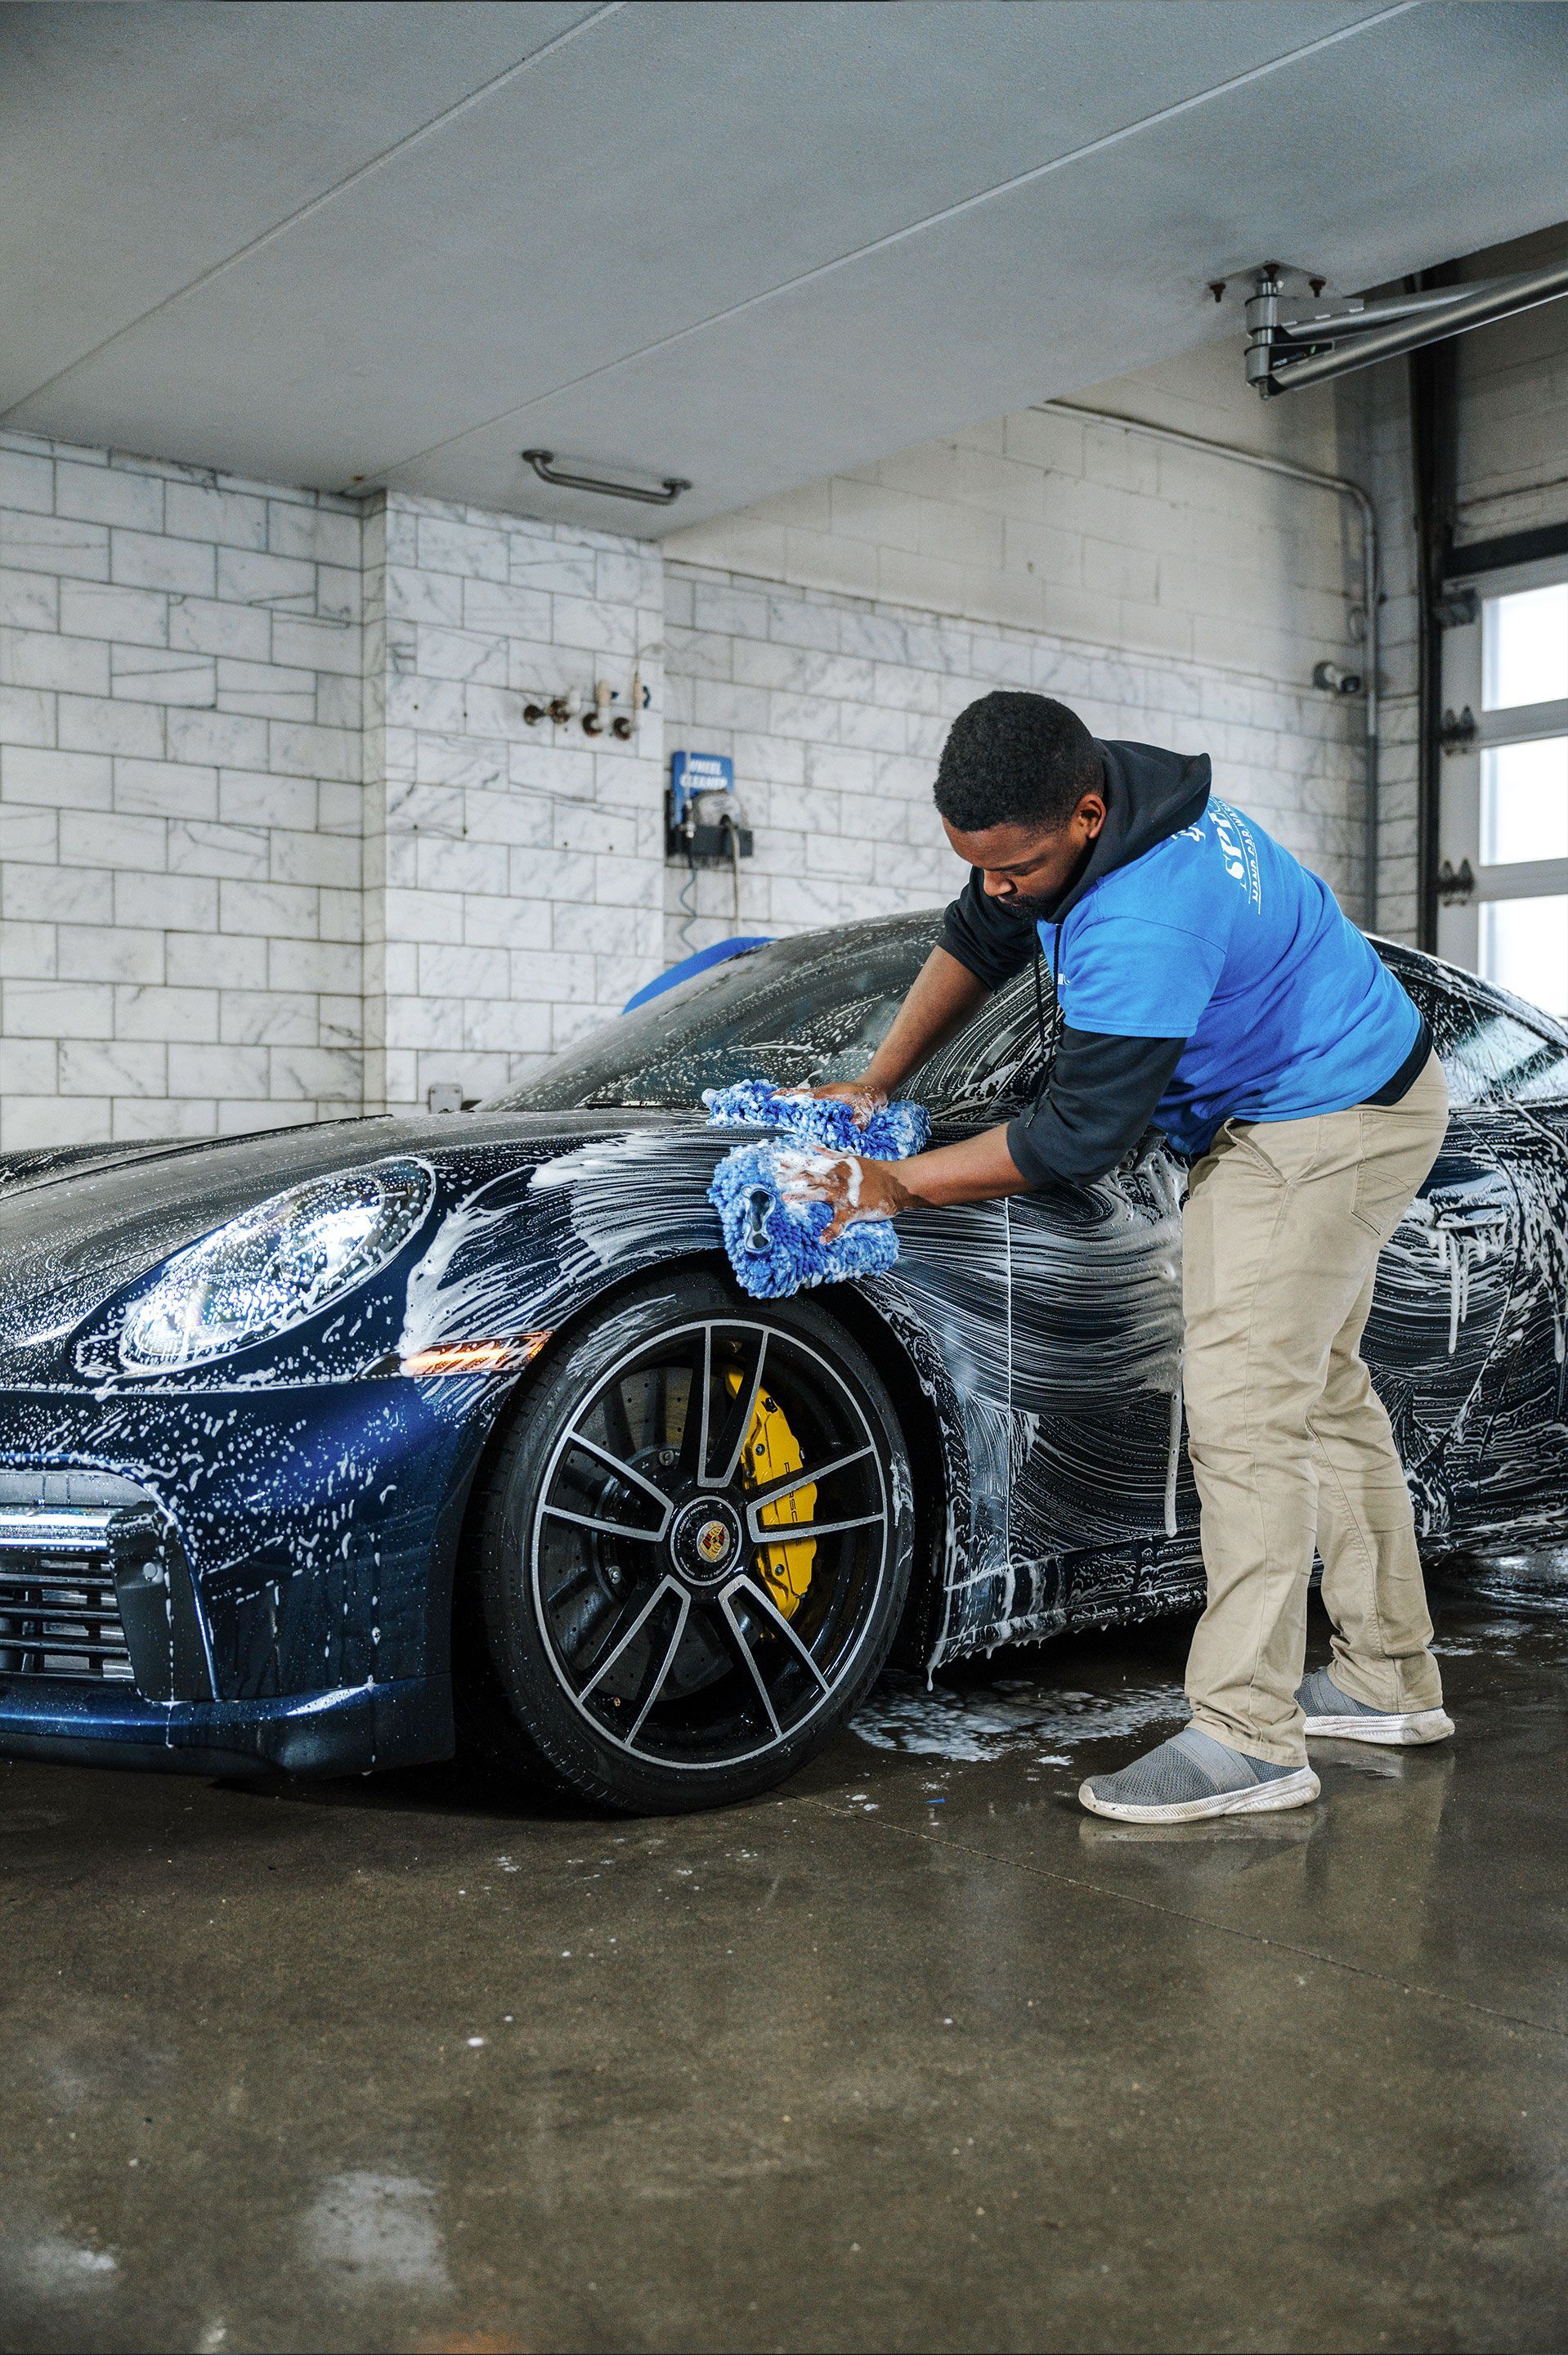 A man is washing a blue sports car in a garage.